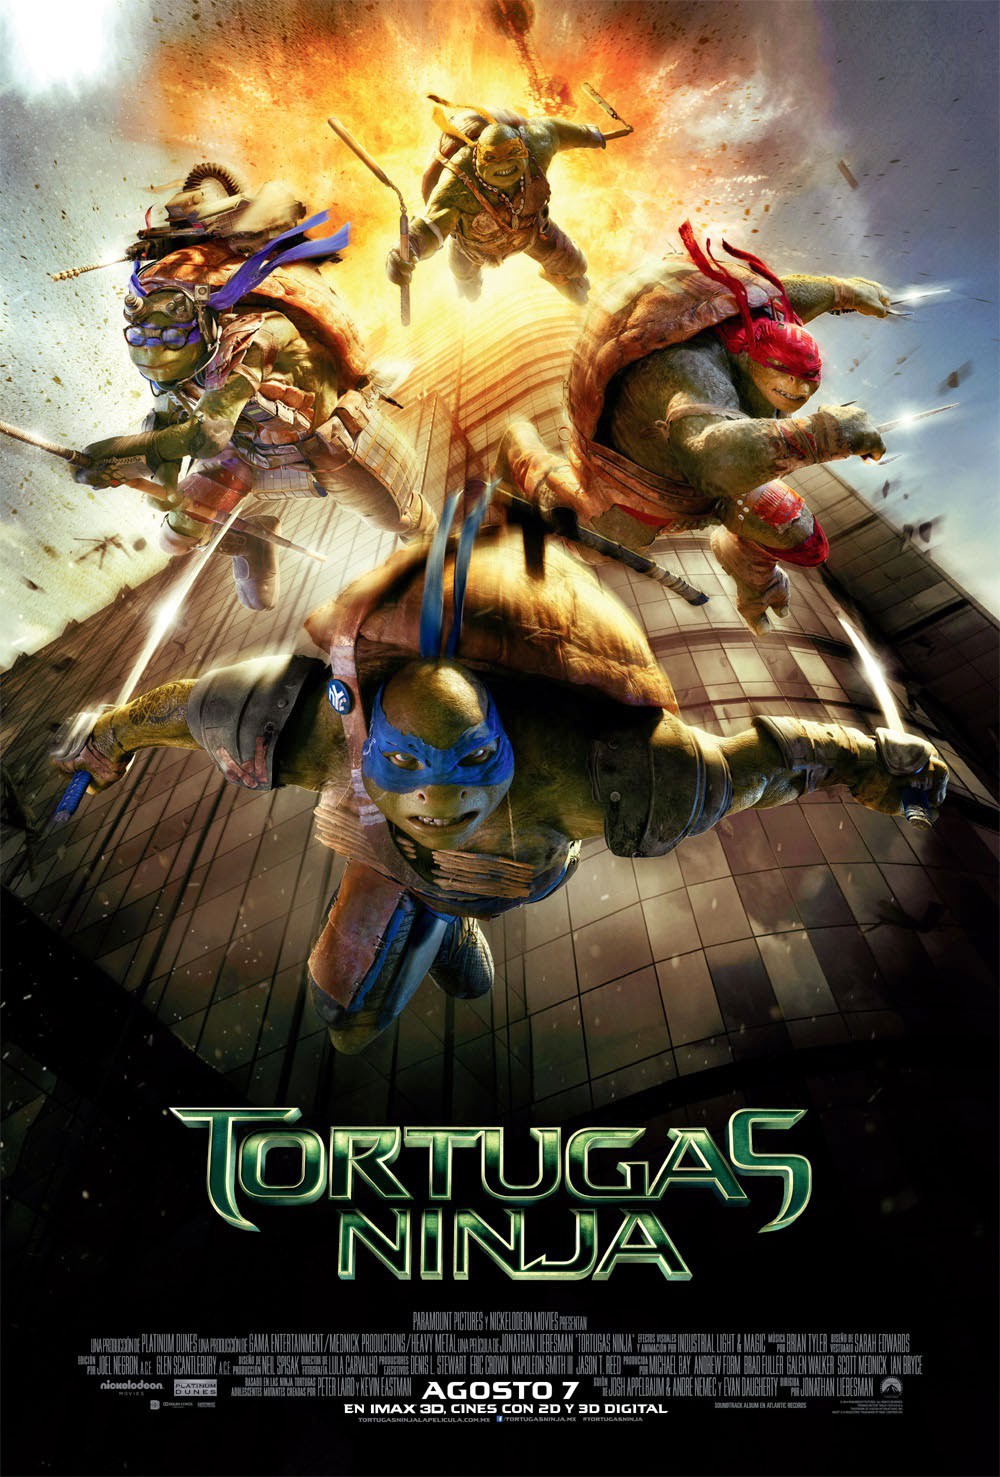 Las Tortugas Ninja (serie de televisión) - Wikipedia, la enciclopedia libre